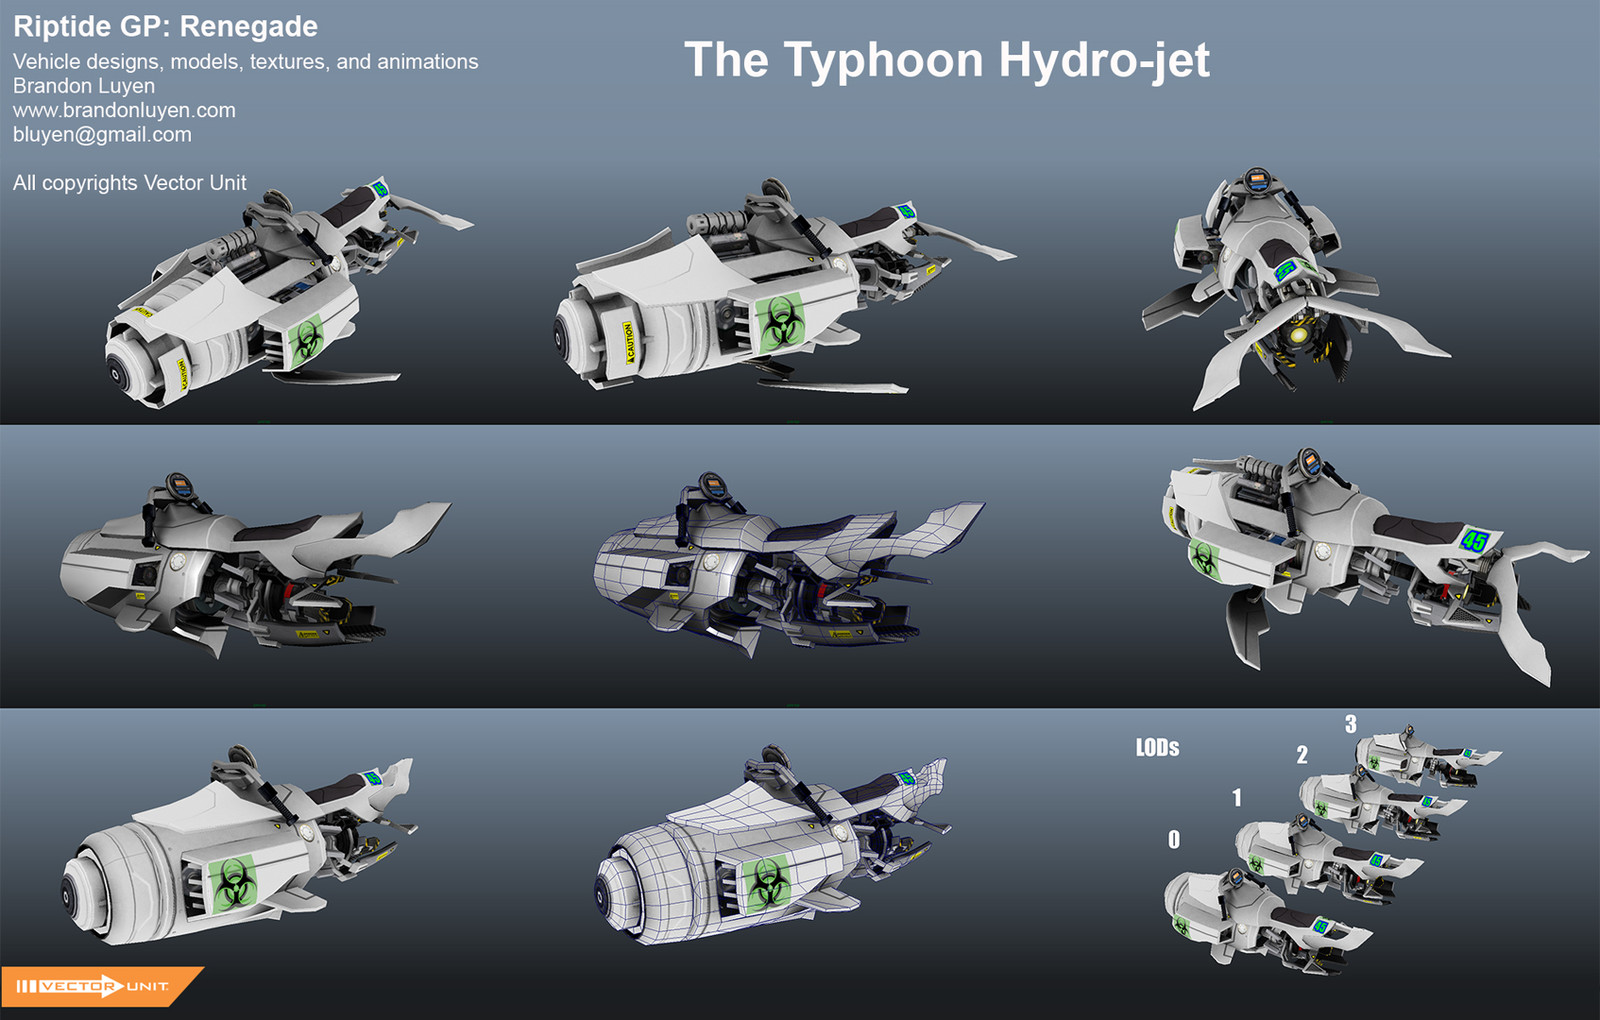 The Typhoon unpainted version